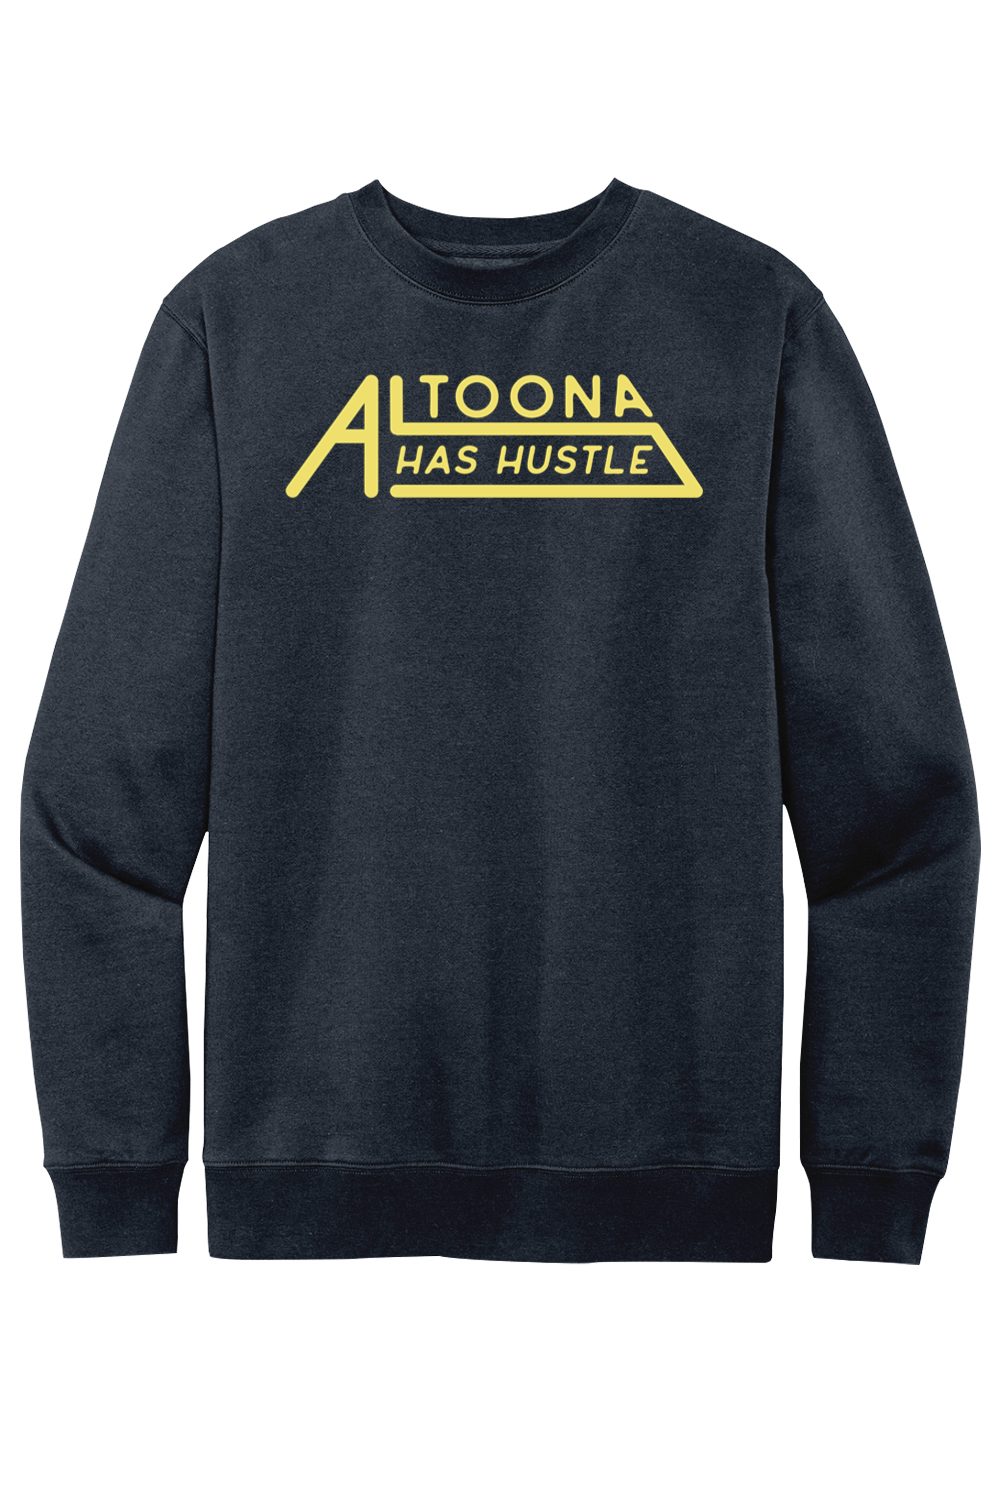 Altoona Has Hustle - Fleece Crewneck Sweatshirt - Yinzylvania